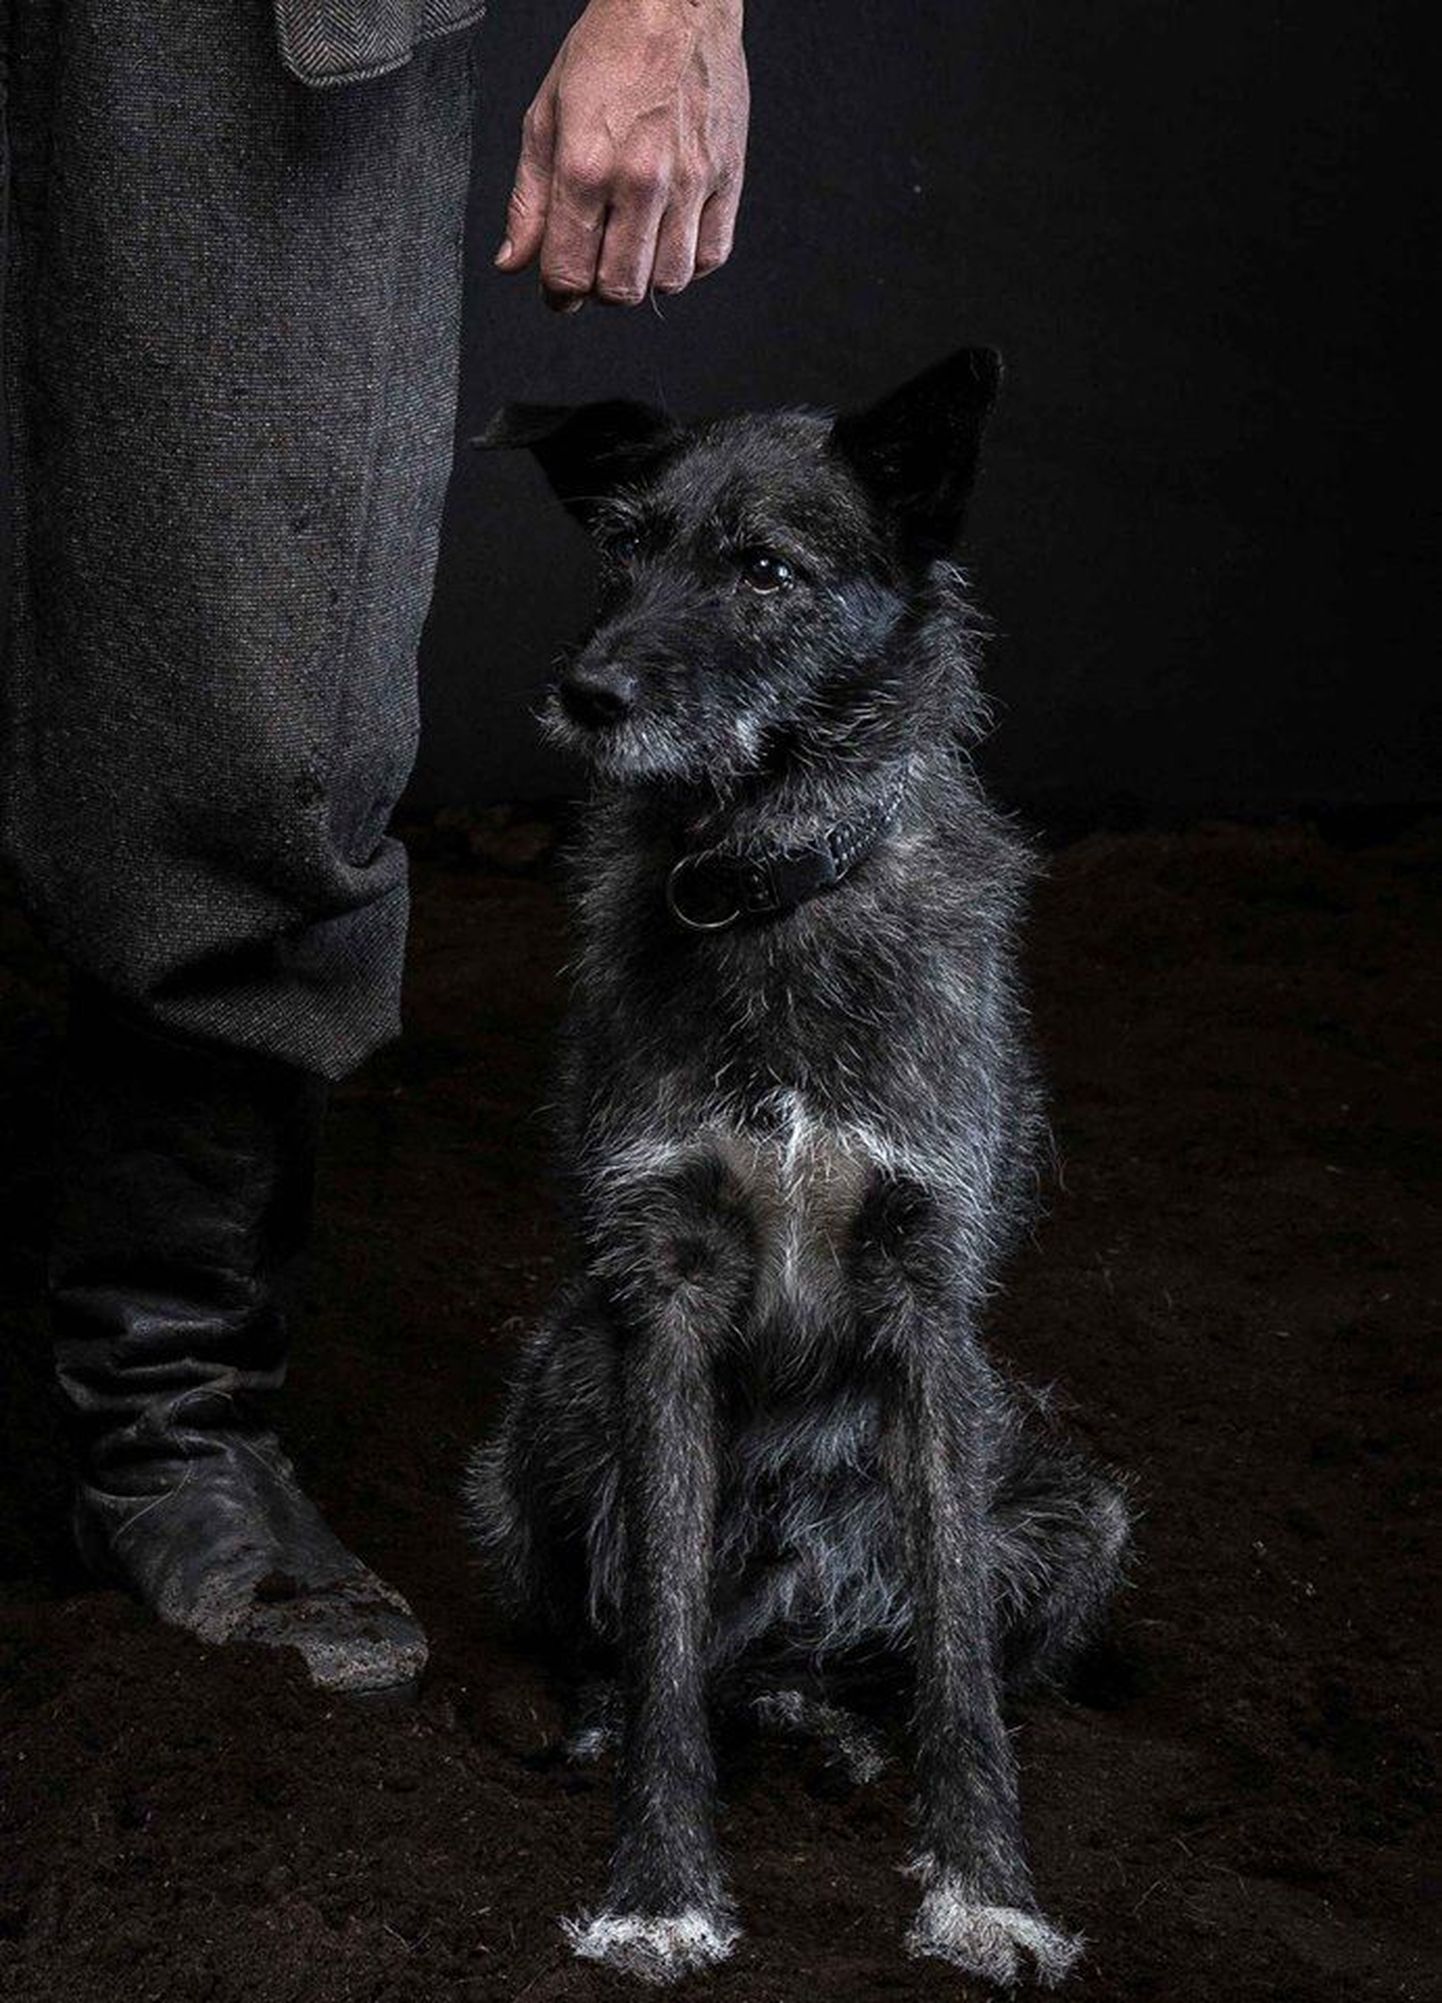 Suurfilmi "Tõde ja õigus" meeskond otsib Oru Pearu koera rolli tumedat krantsi.